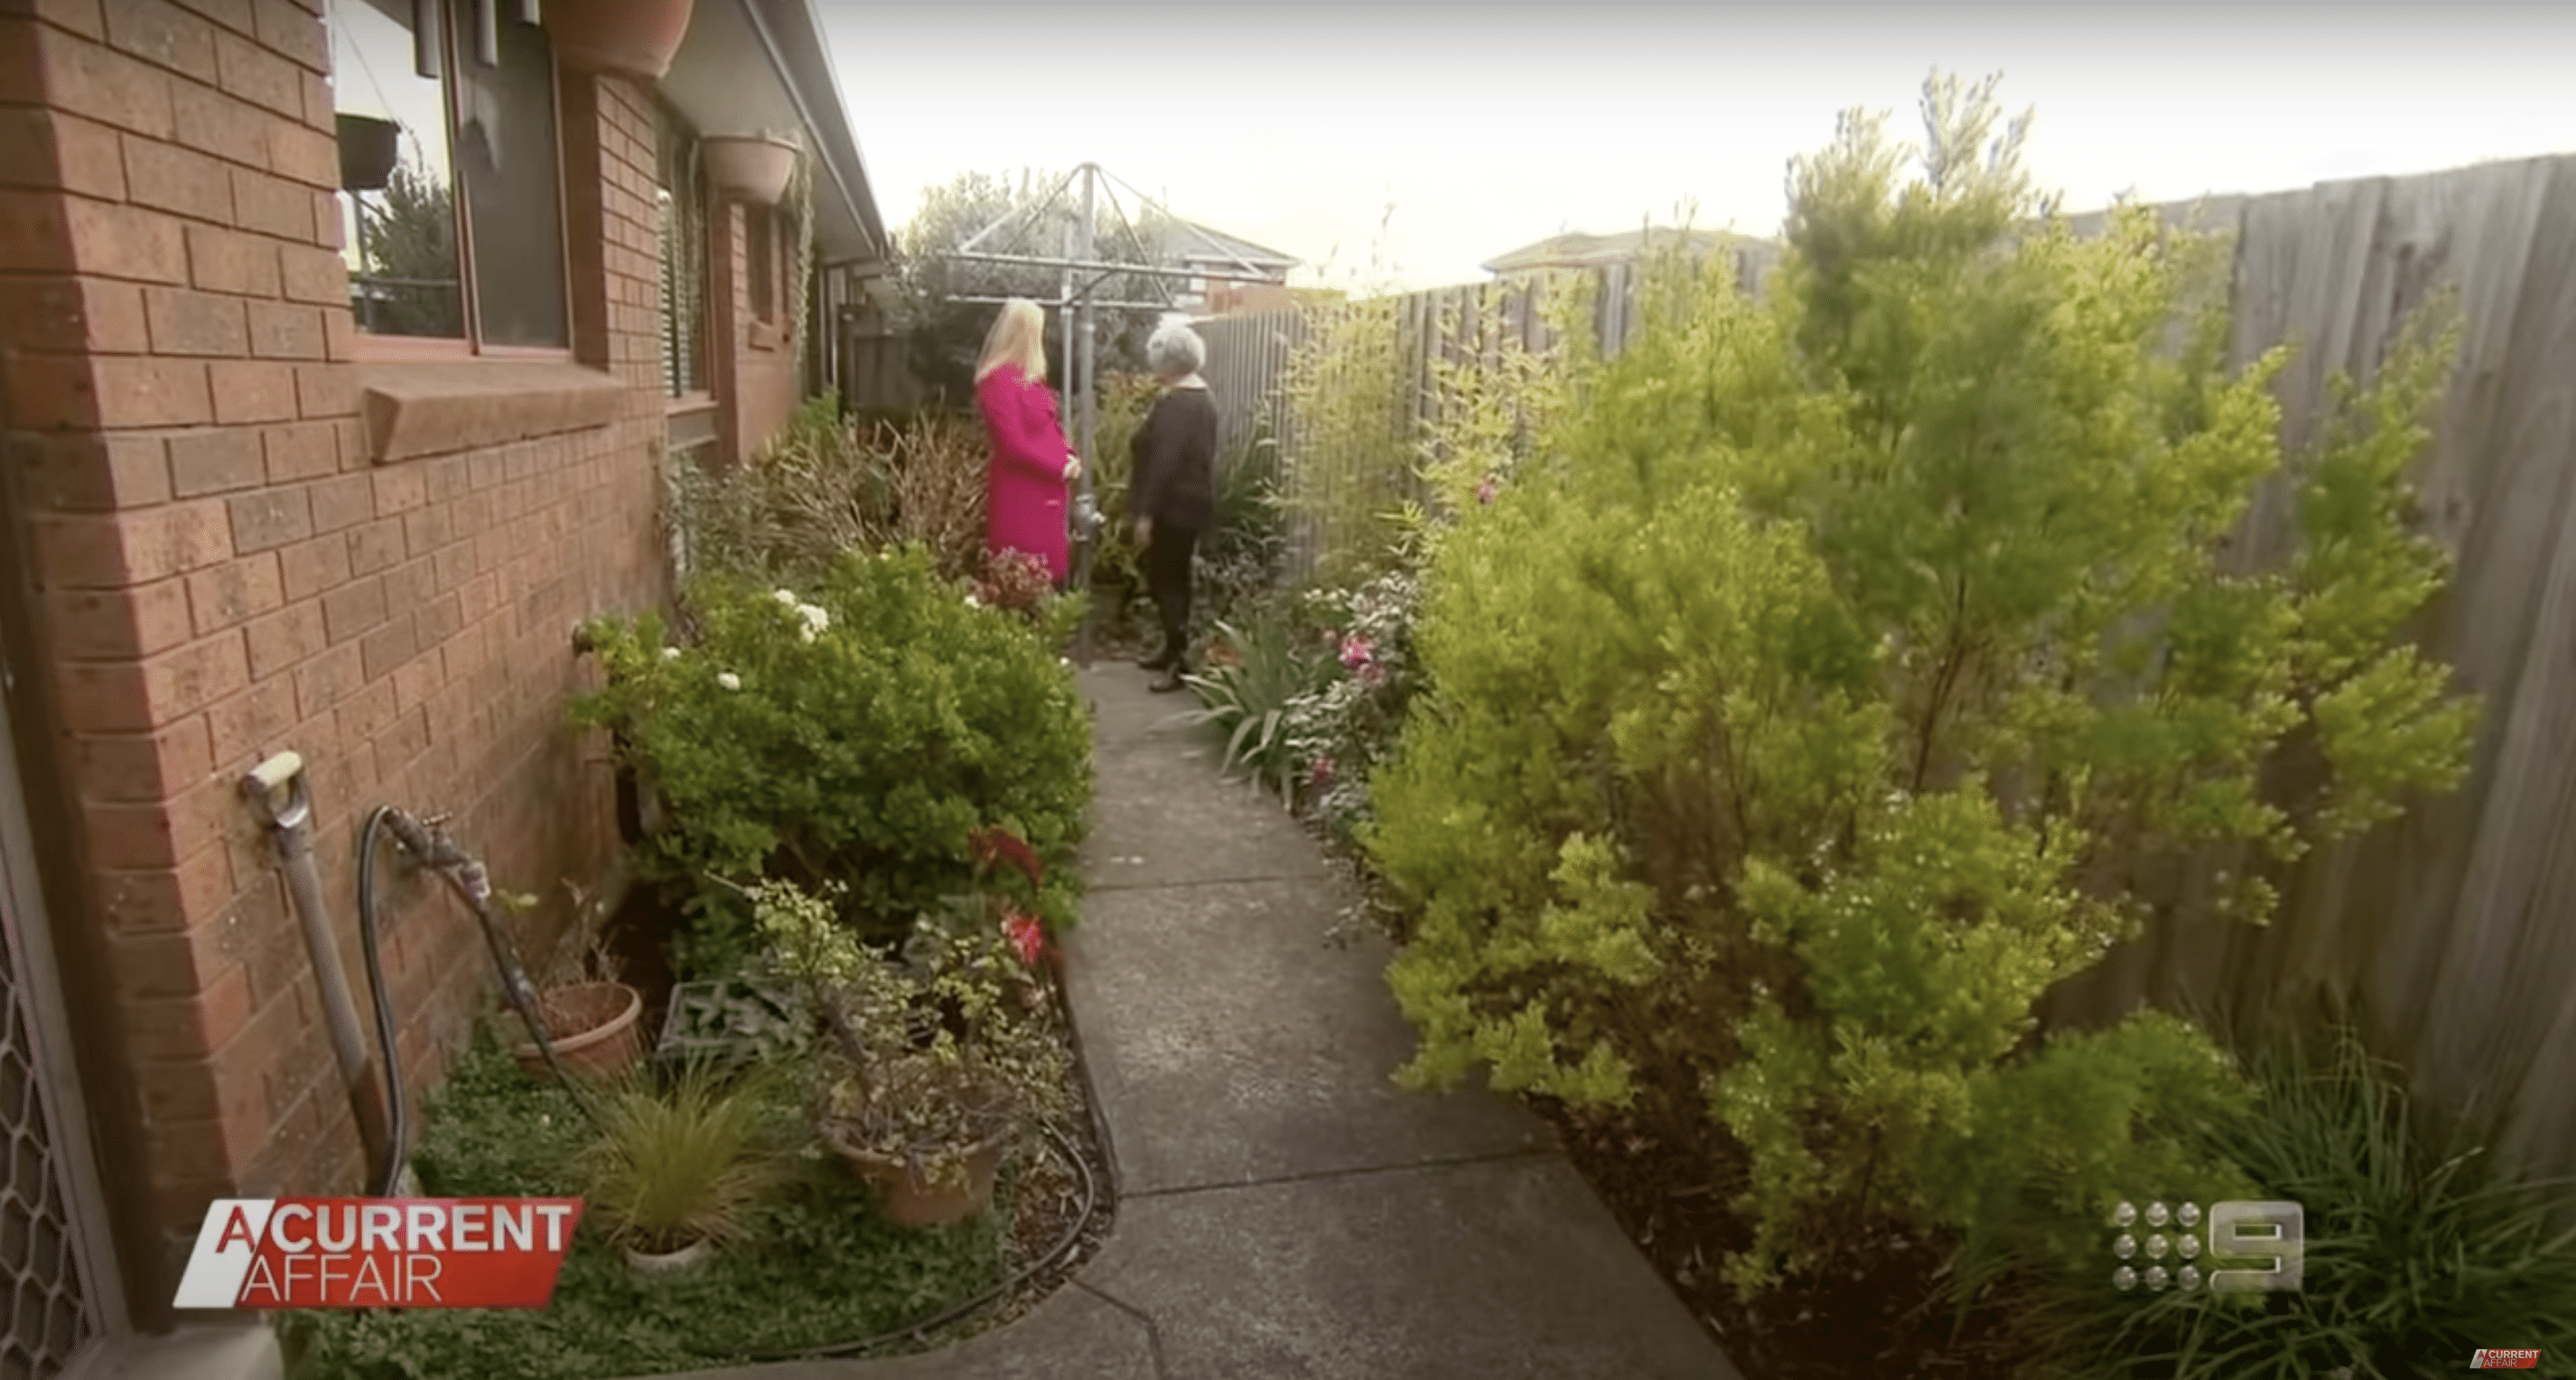 Jane Sayner mit einem Nachrichtenkorrespondenten für "A Current Affair" im Garten ihrer Wohnung in St Albans | Quelle: YouTube.com/A Current Affair